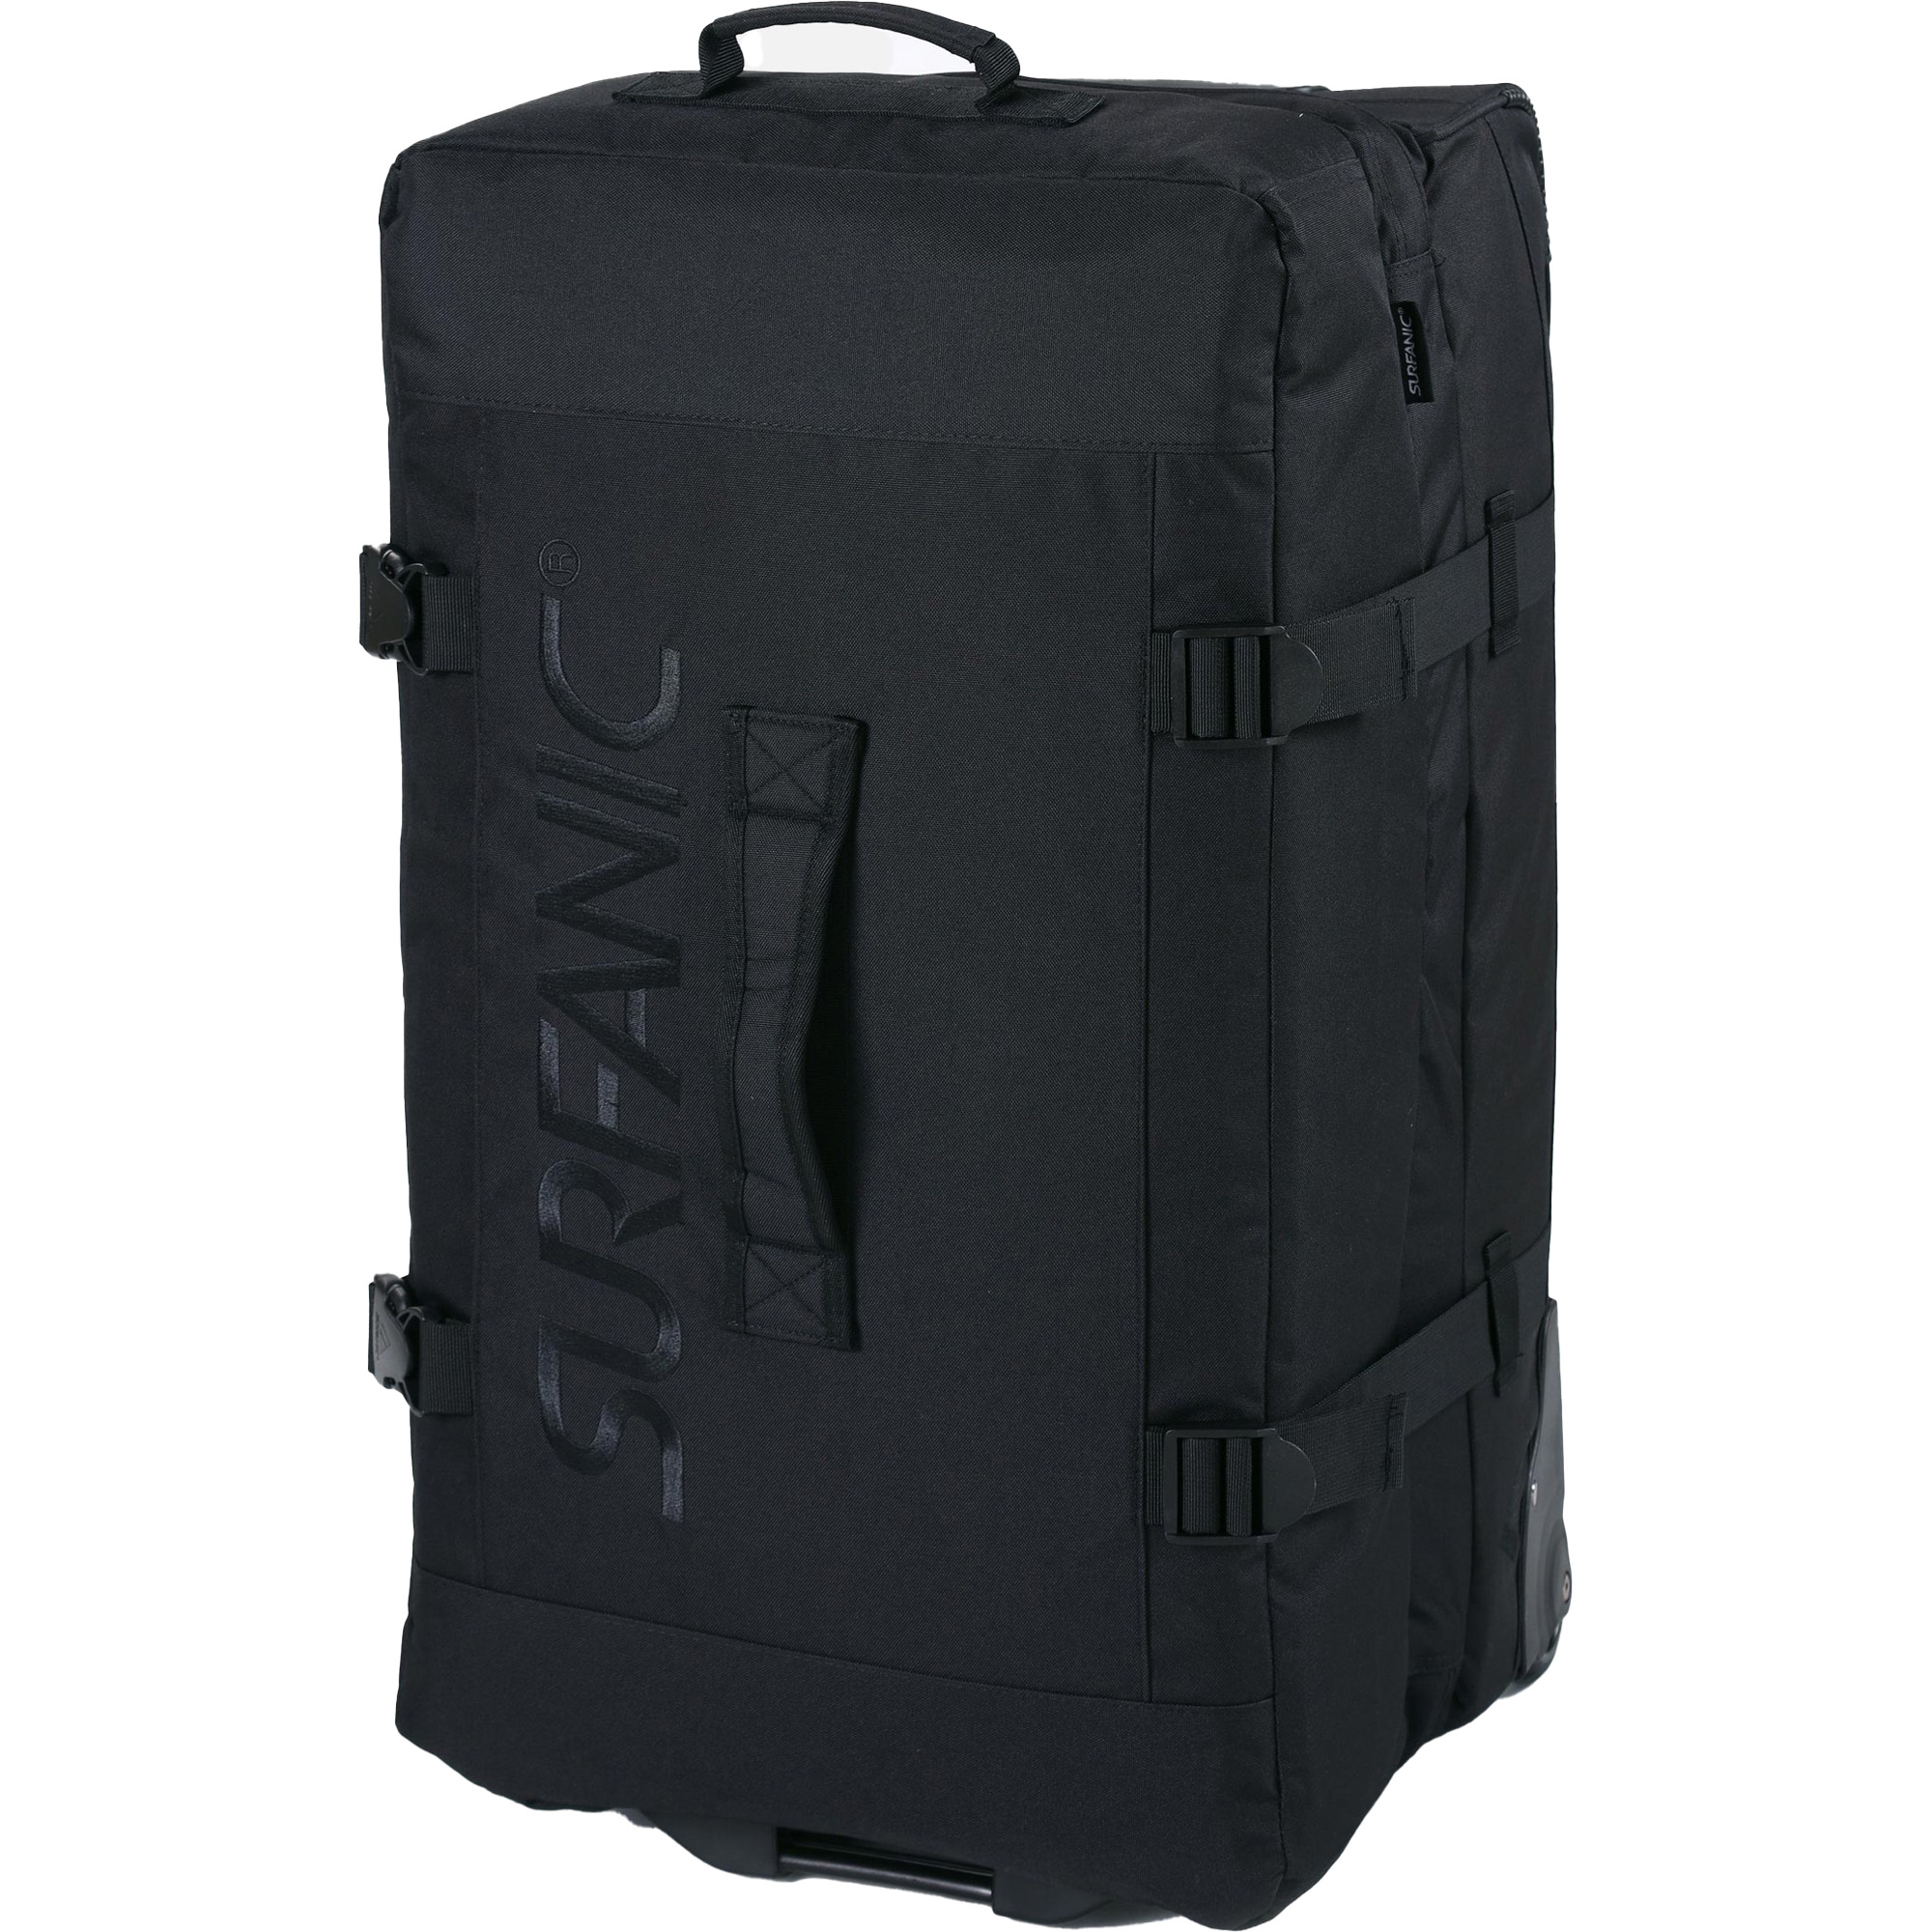 Surfanic Maxim 2.0 100 Wheeled Luggage Bag